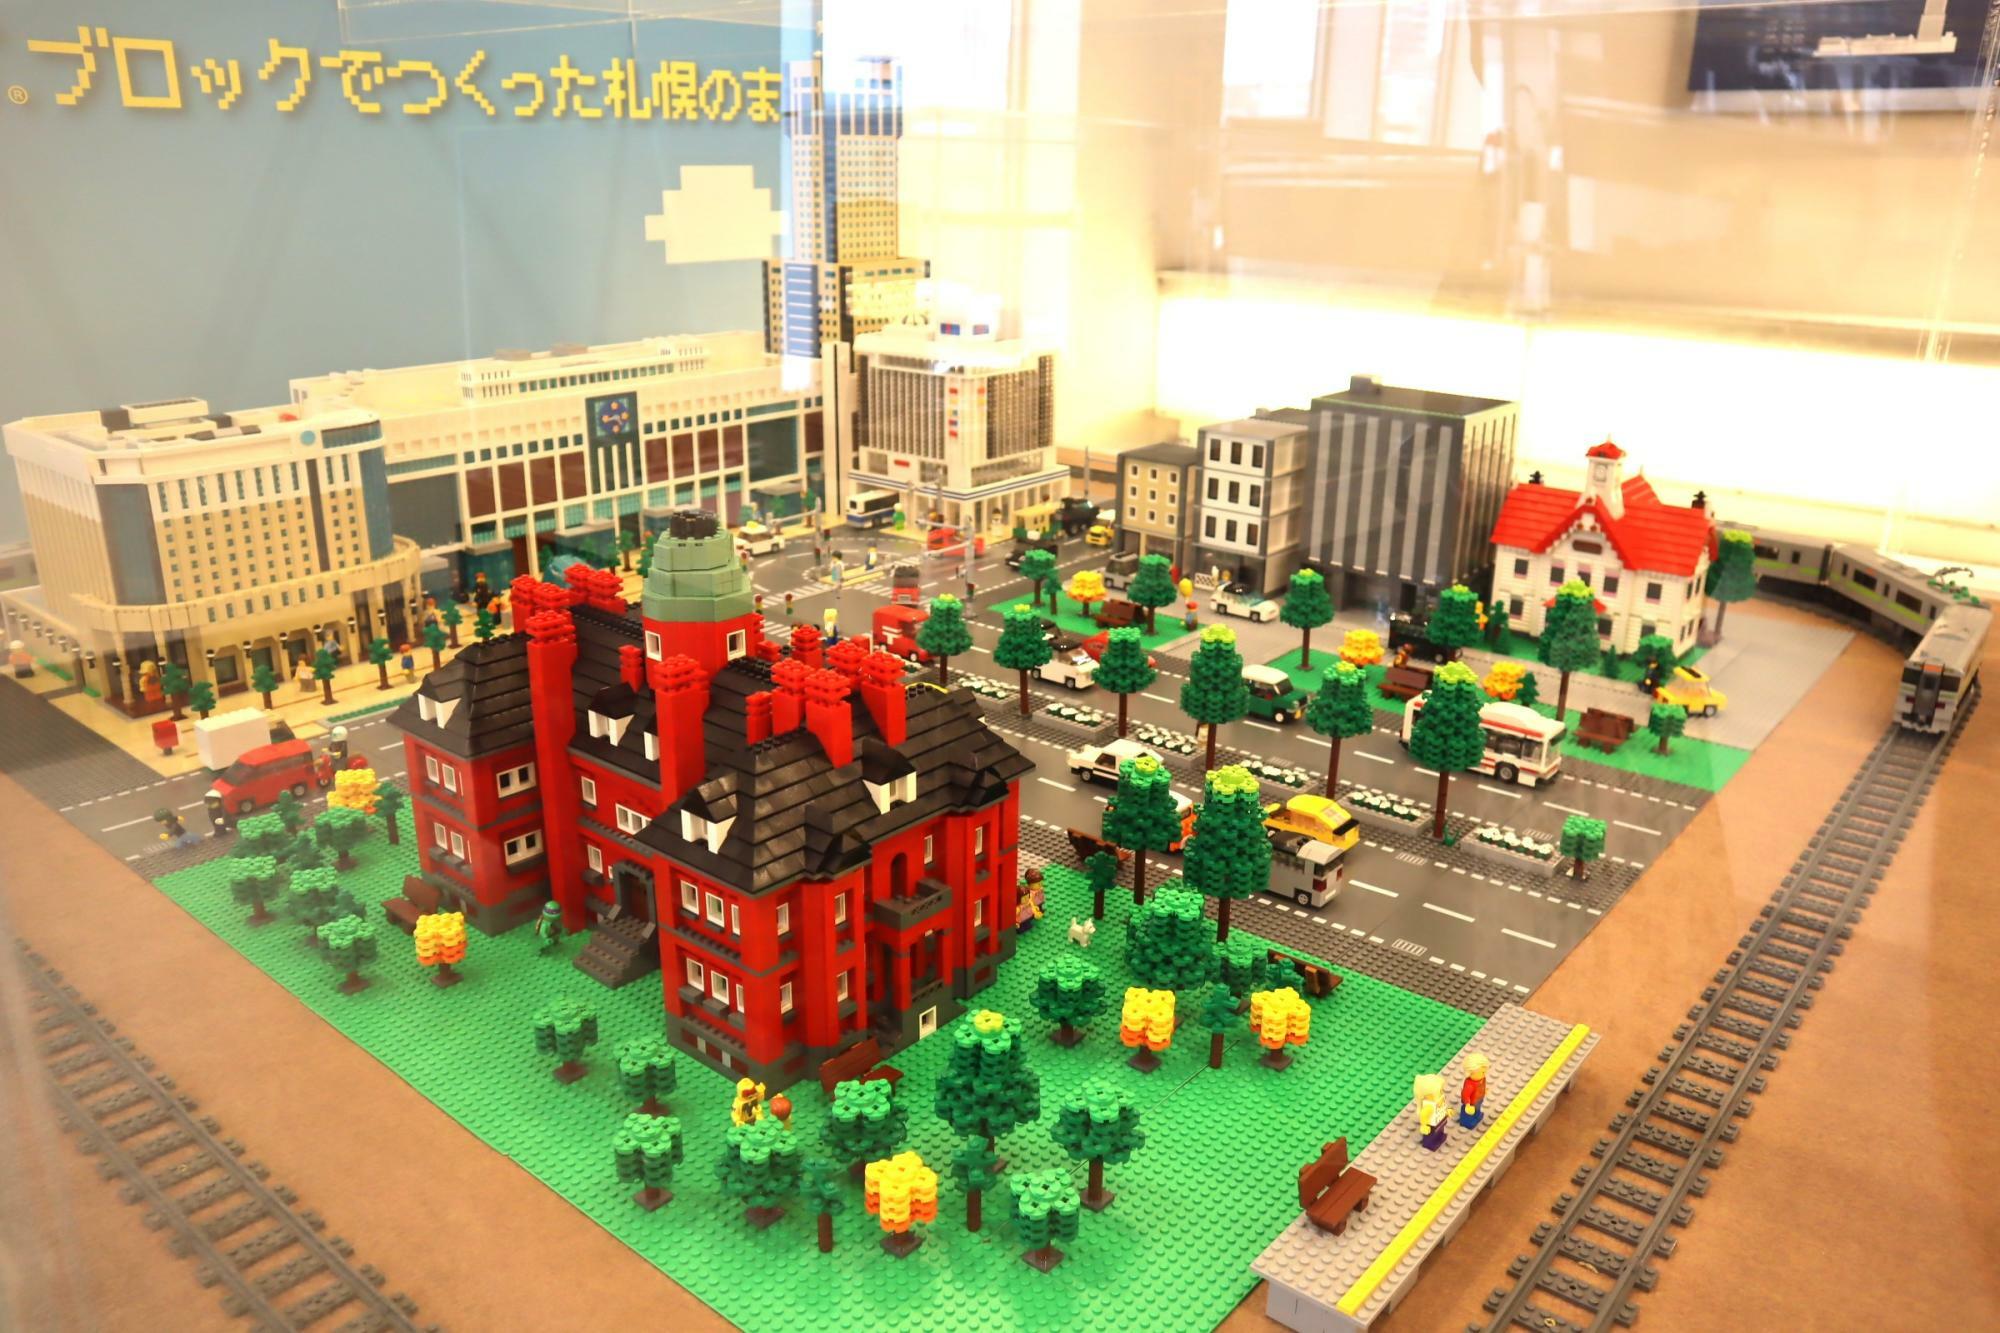 レゴブロックで作られた札幌の街並みが凝縮されていてとてもかわいいです。